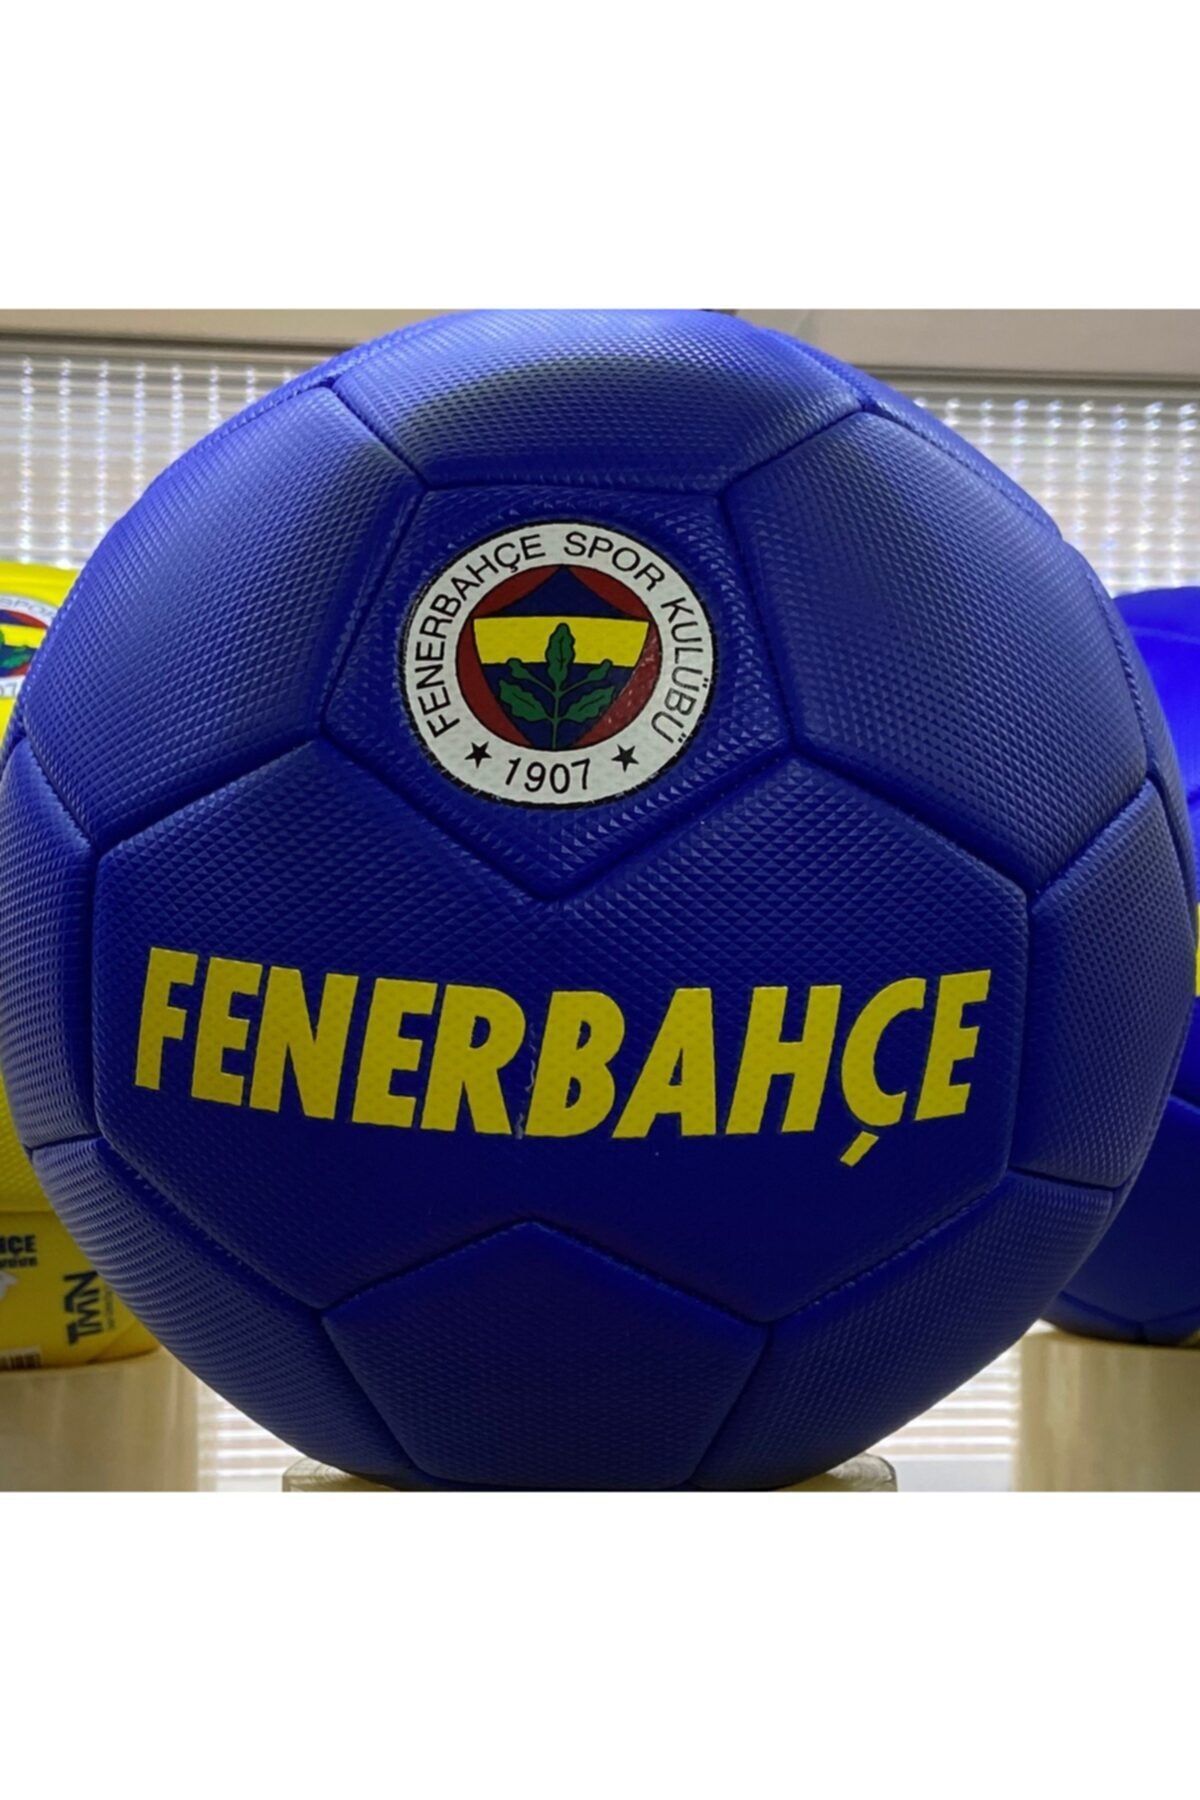 Fenerbahçe Orjinal Lisanslı Futbol Topu - 1